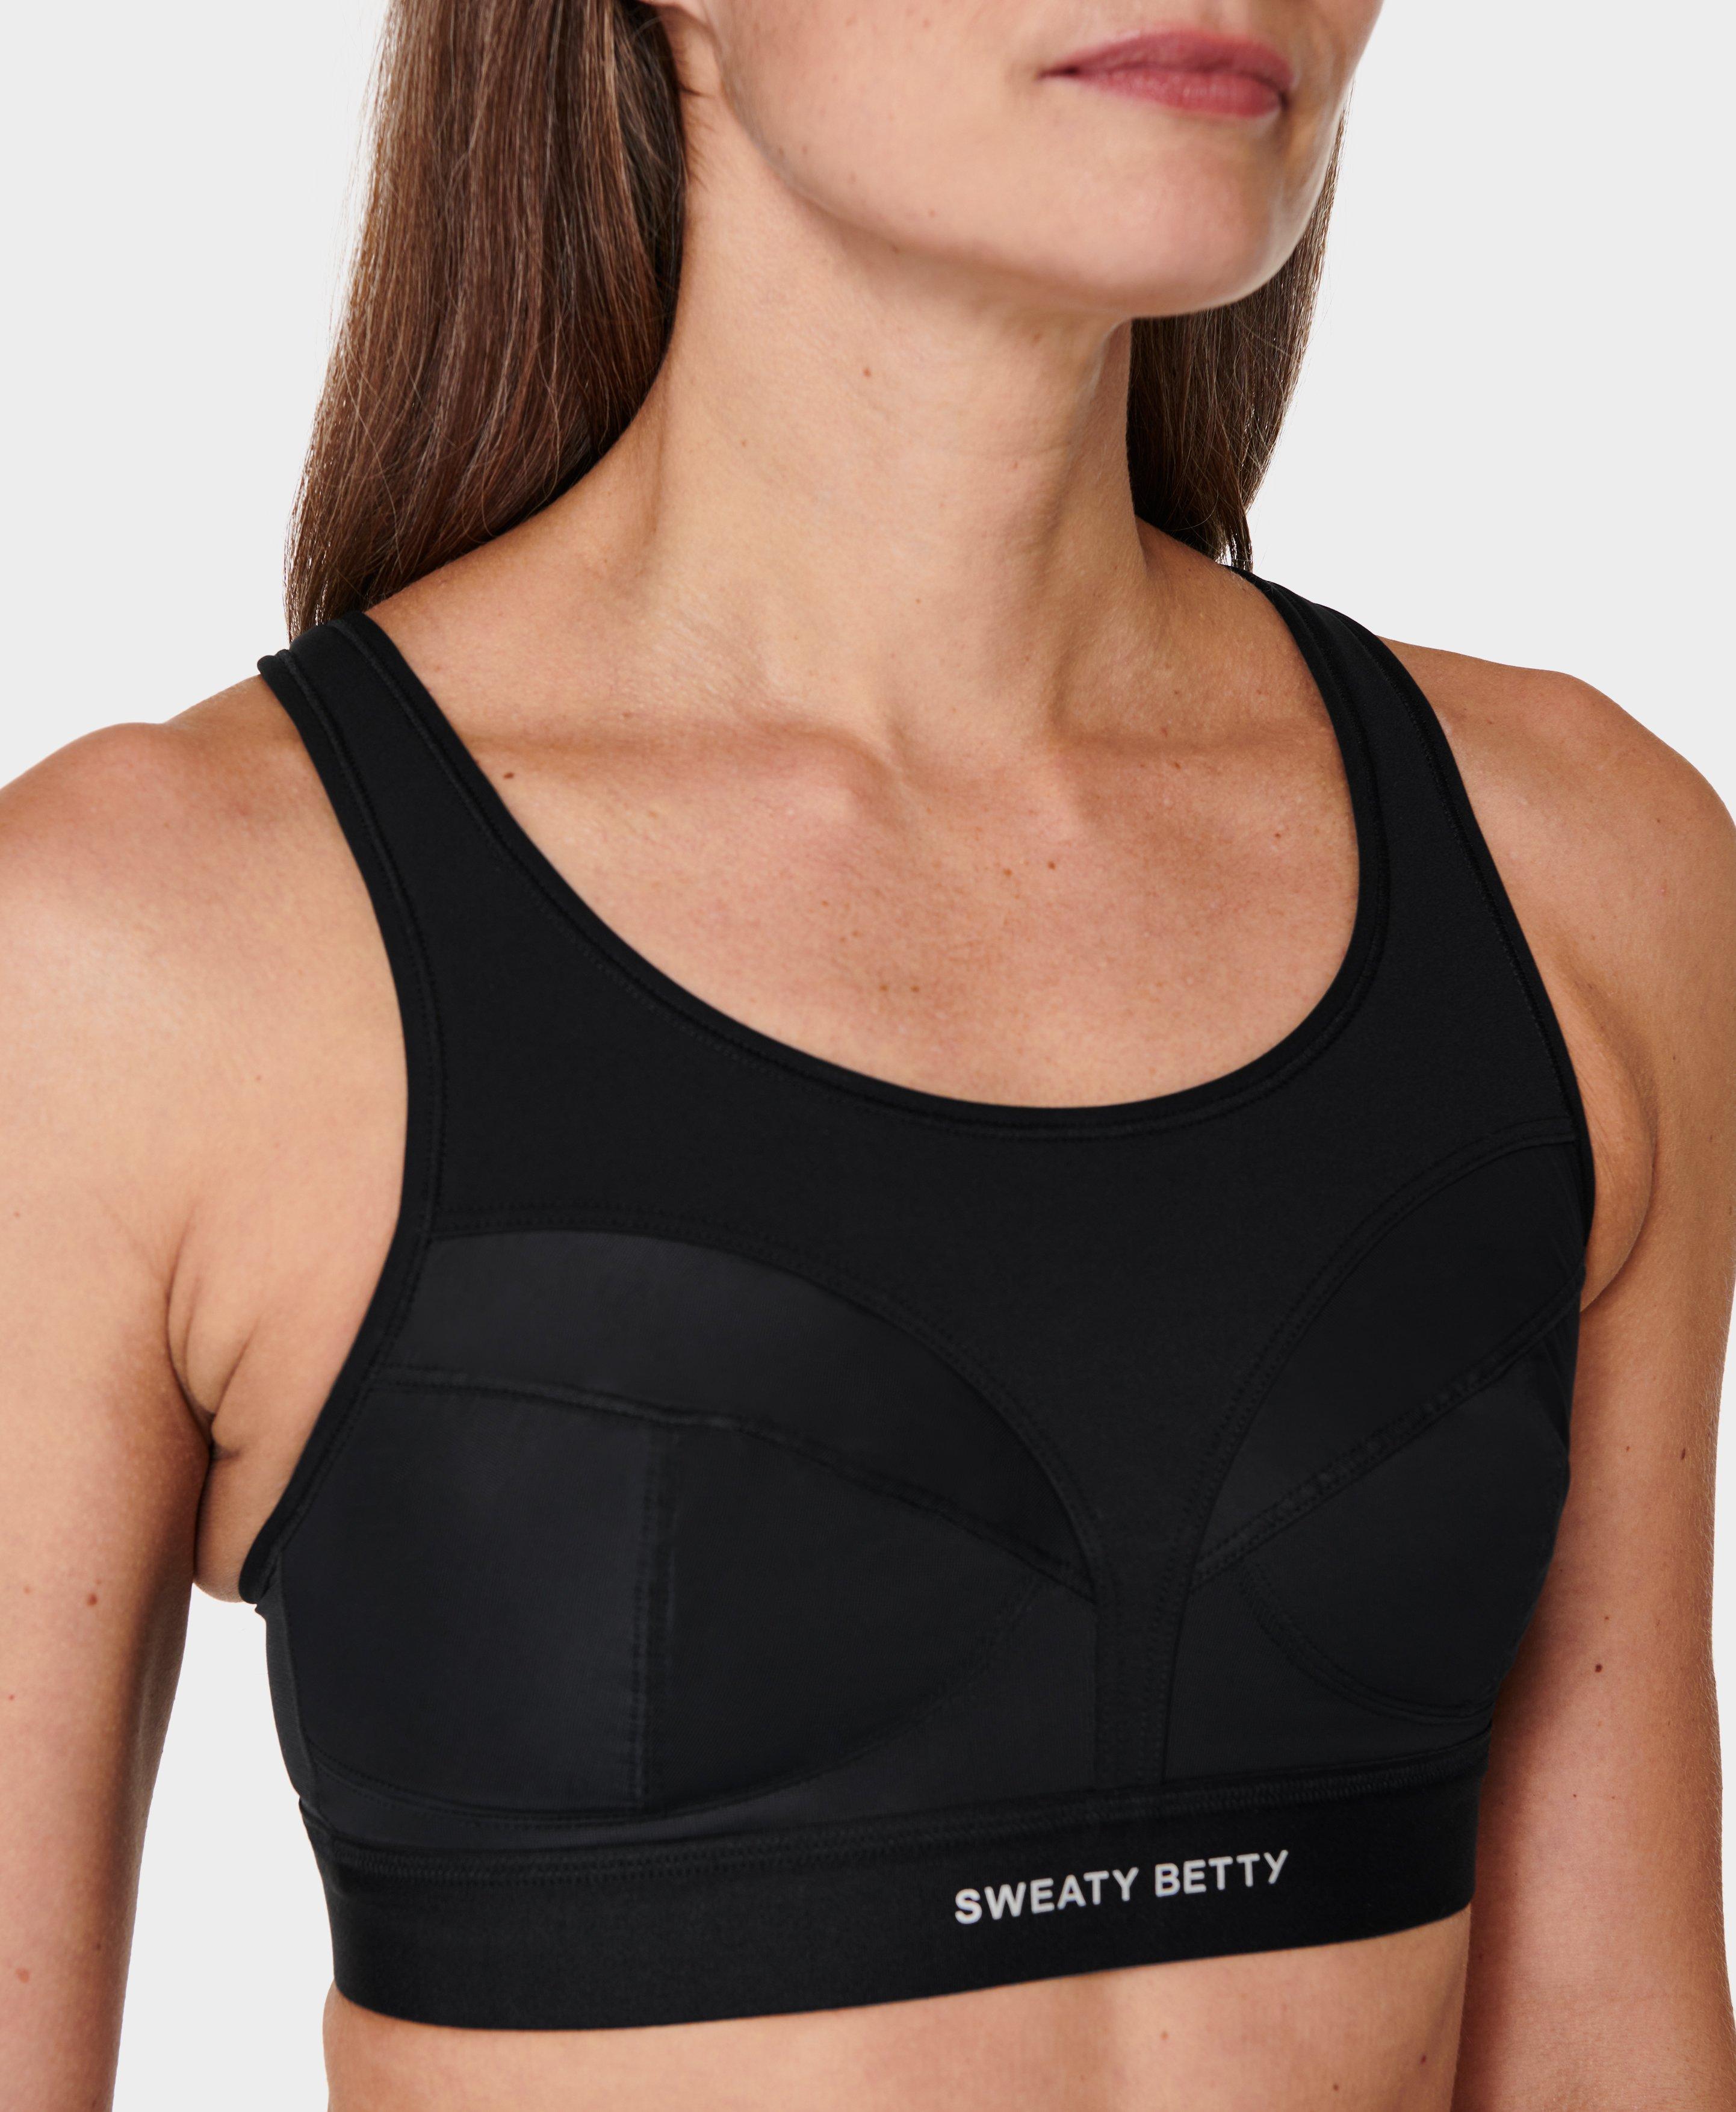 Sweaty Betty Black Sports Bra Size XL - 70% off